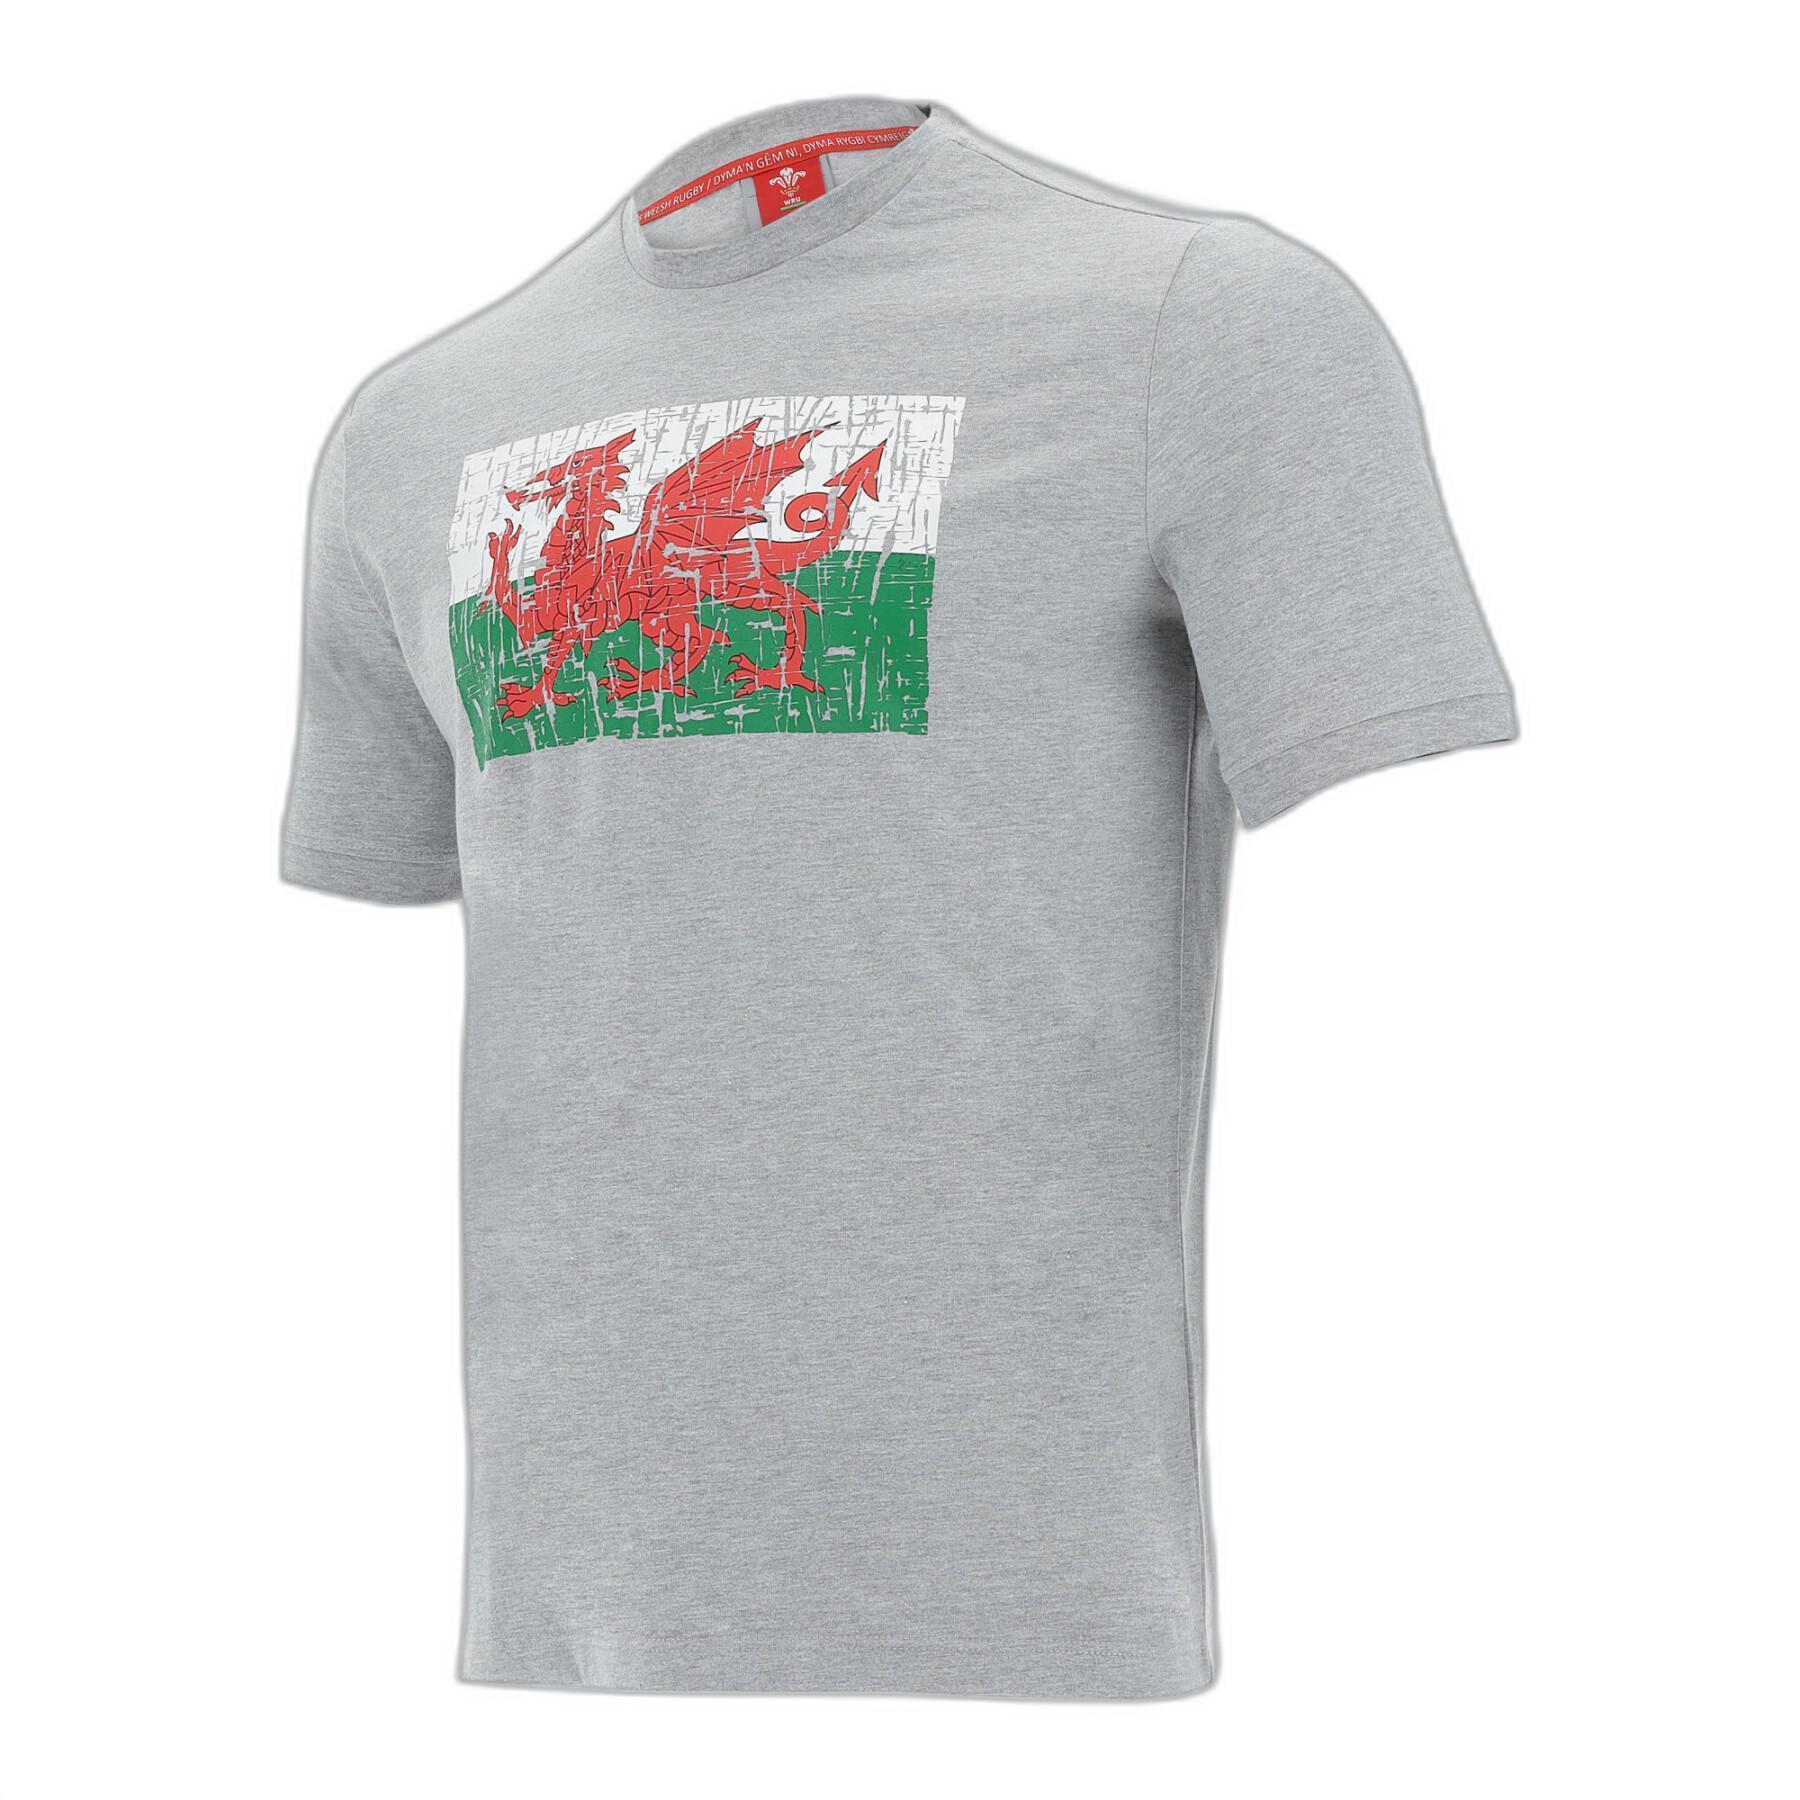 T-shirt coton Pays de Galles Rugby XV 2020/21